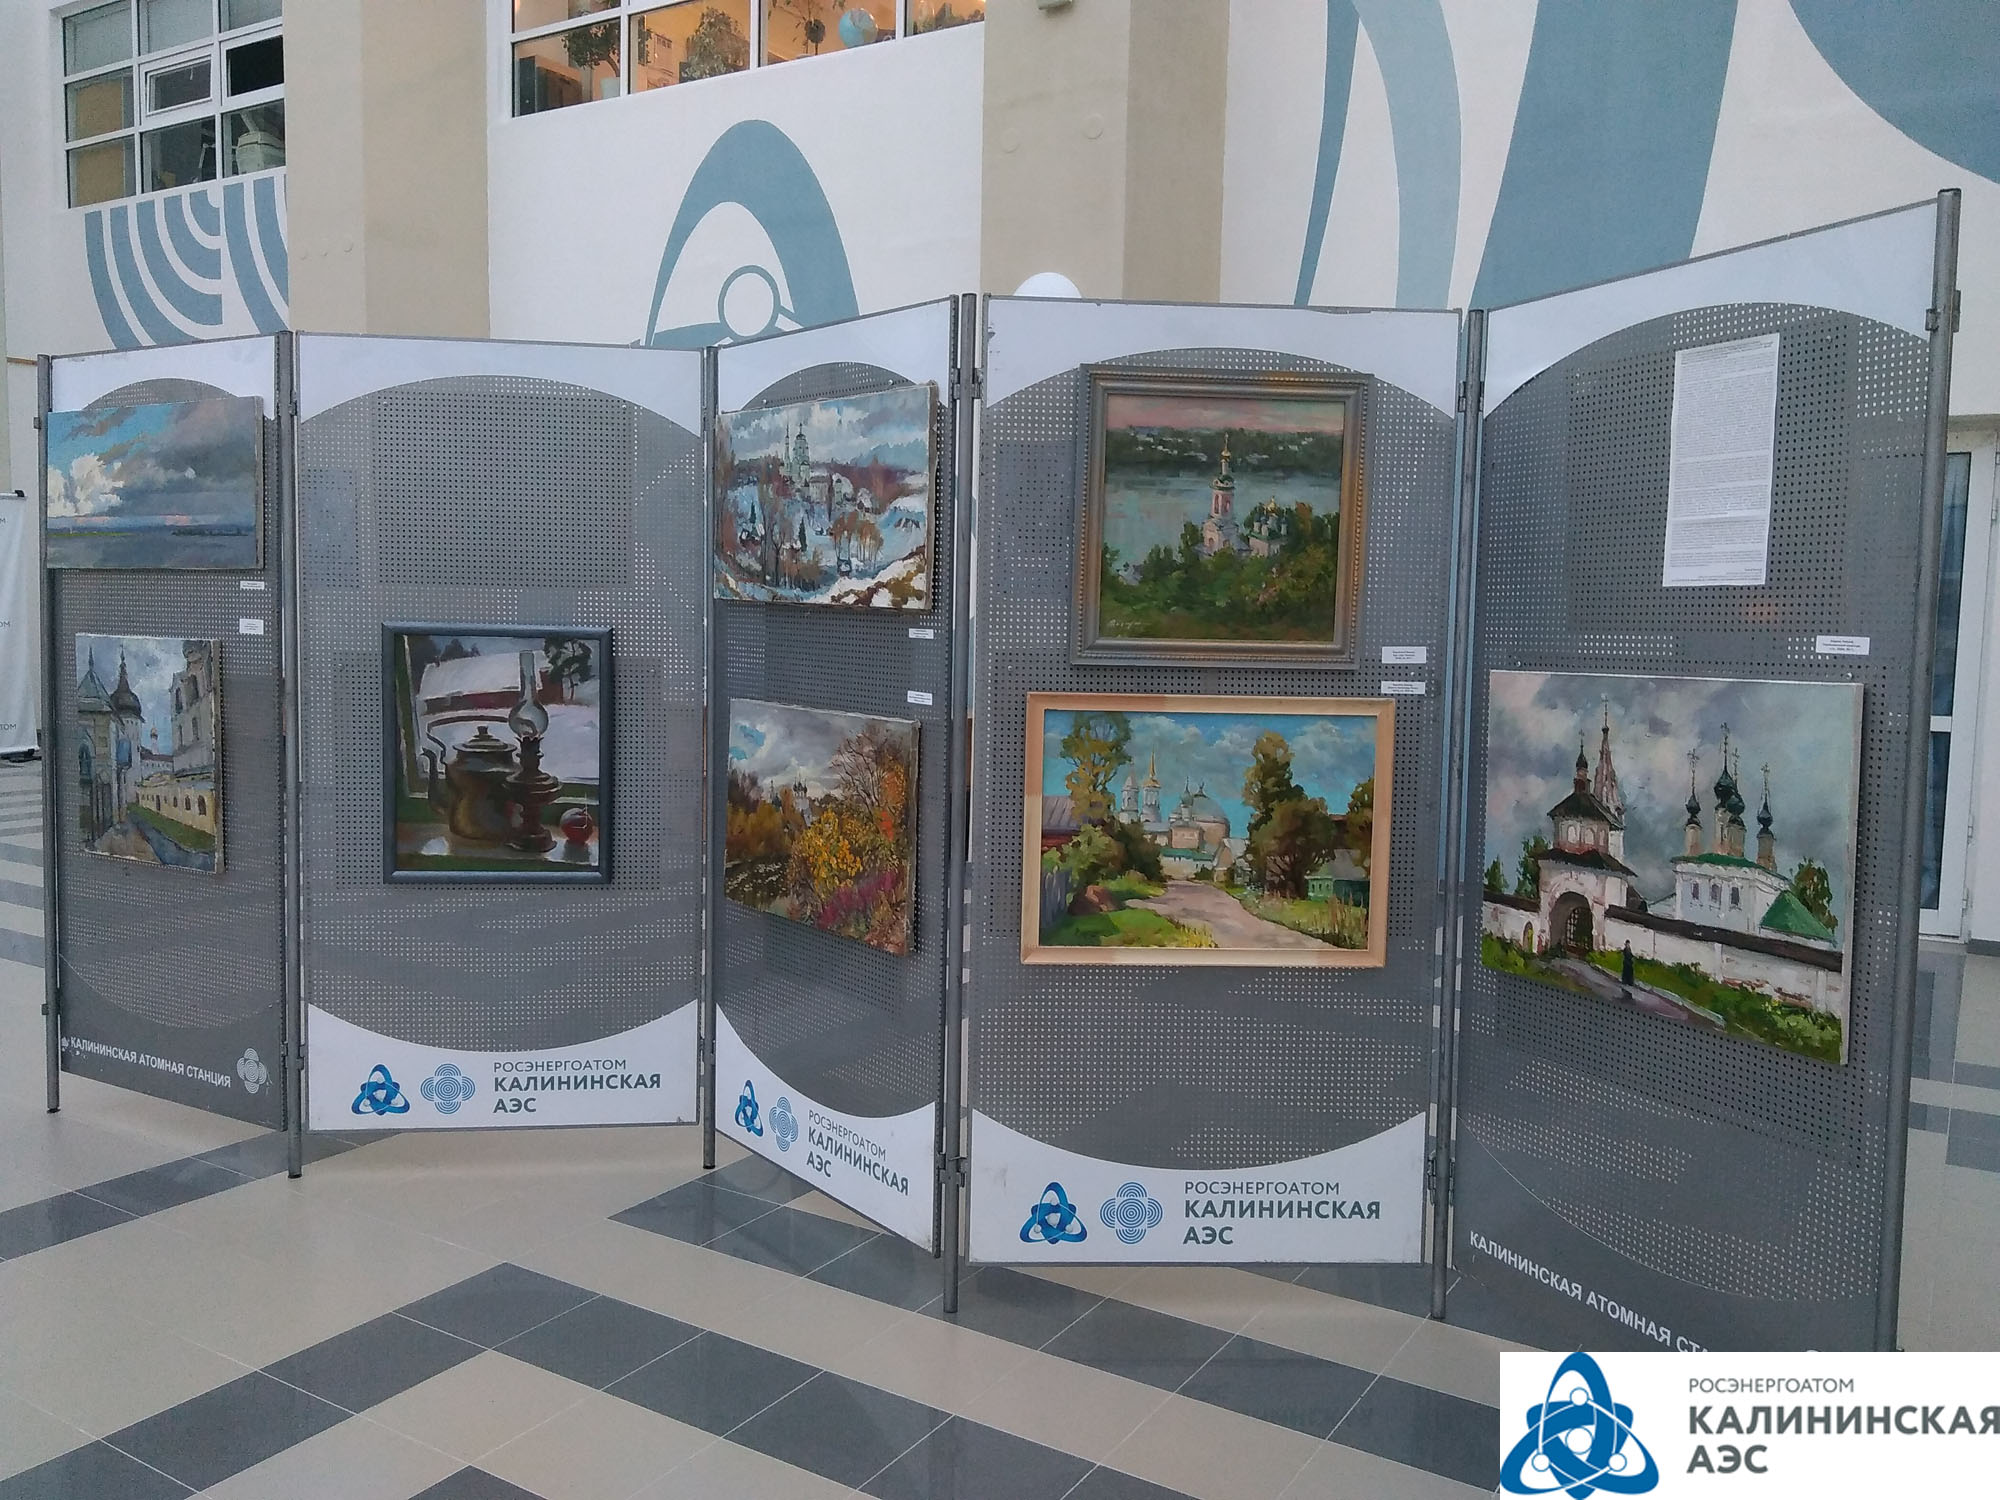 В Центре общественной информации Калининской АЭС открылась выставка "Русская Атлантида"